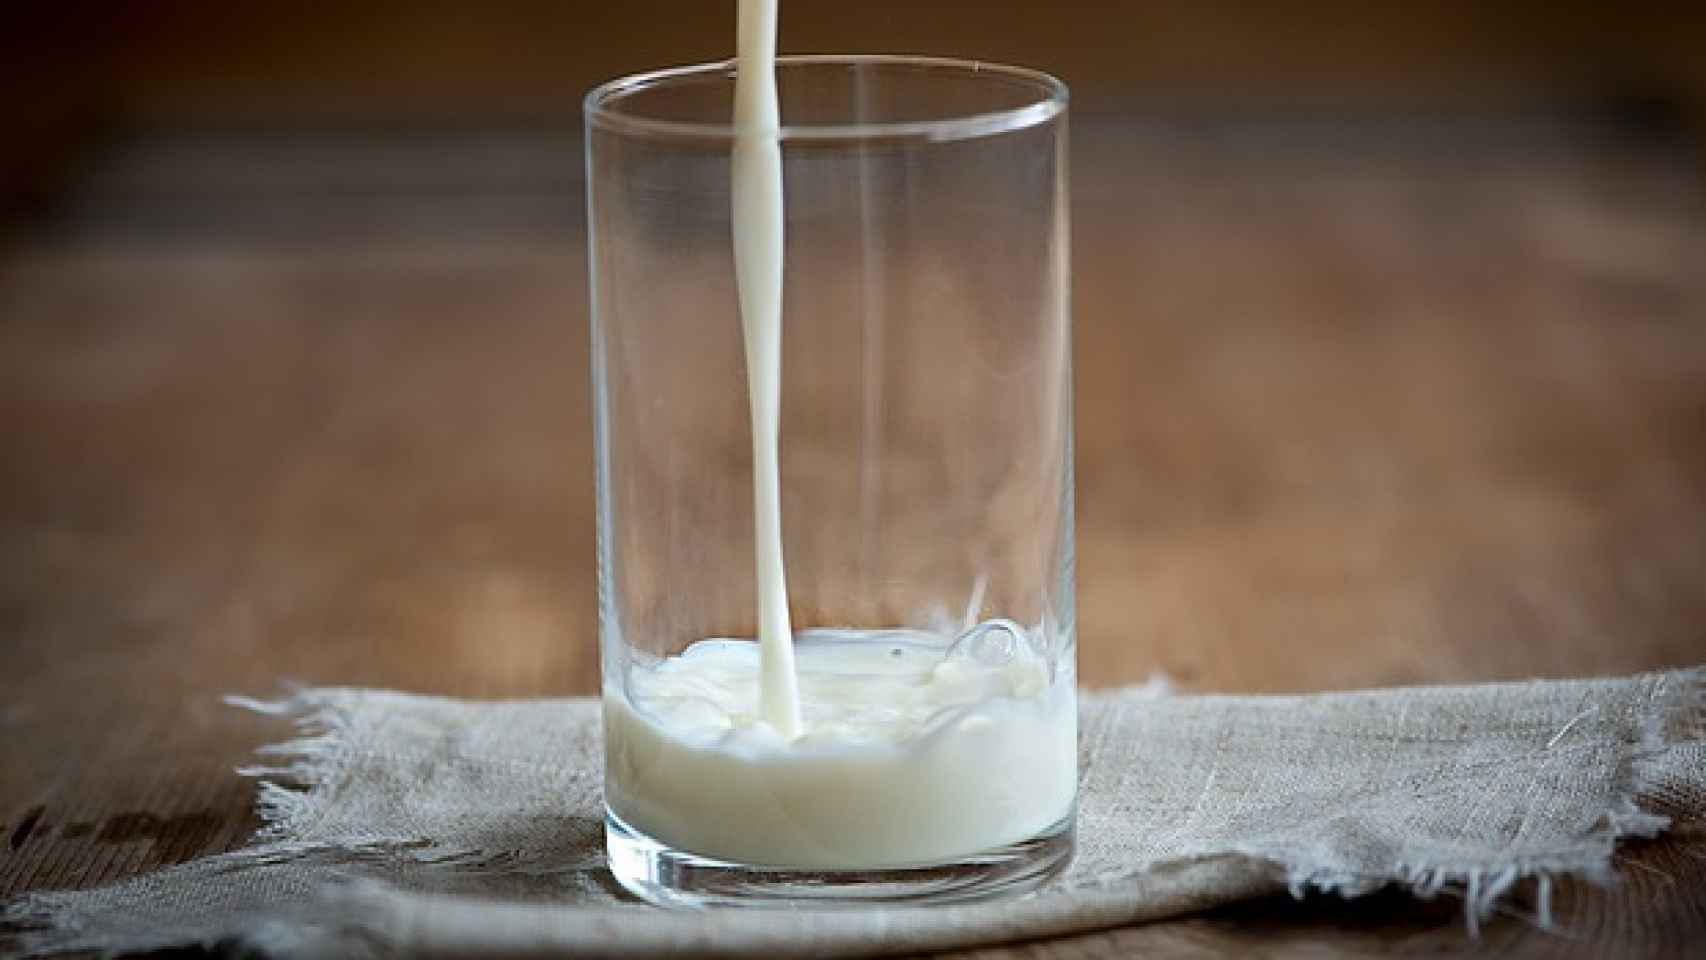 Un vaso de leche de Central Lechera Asturiana.